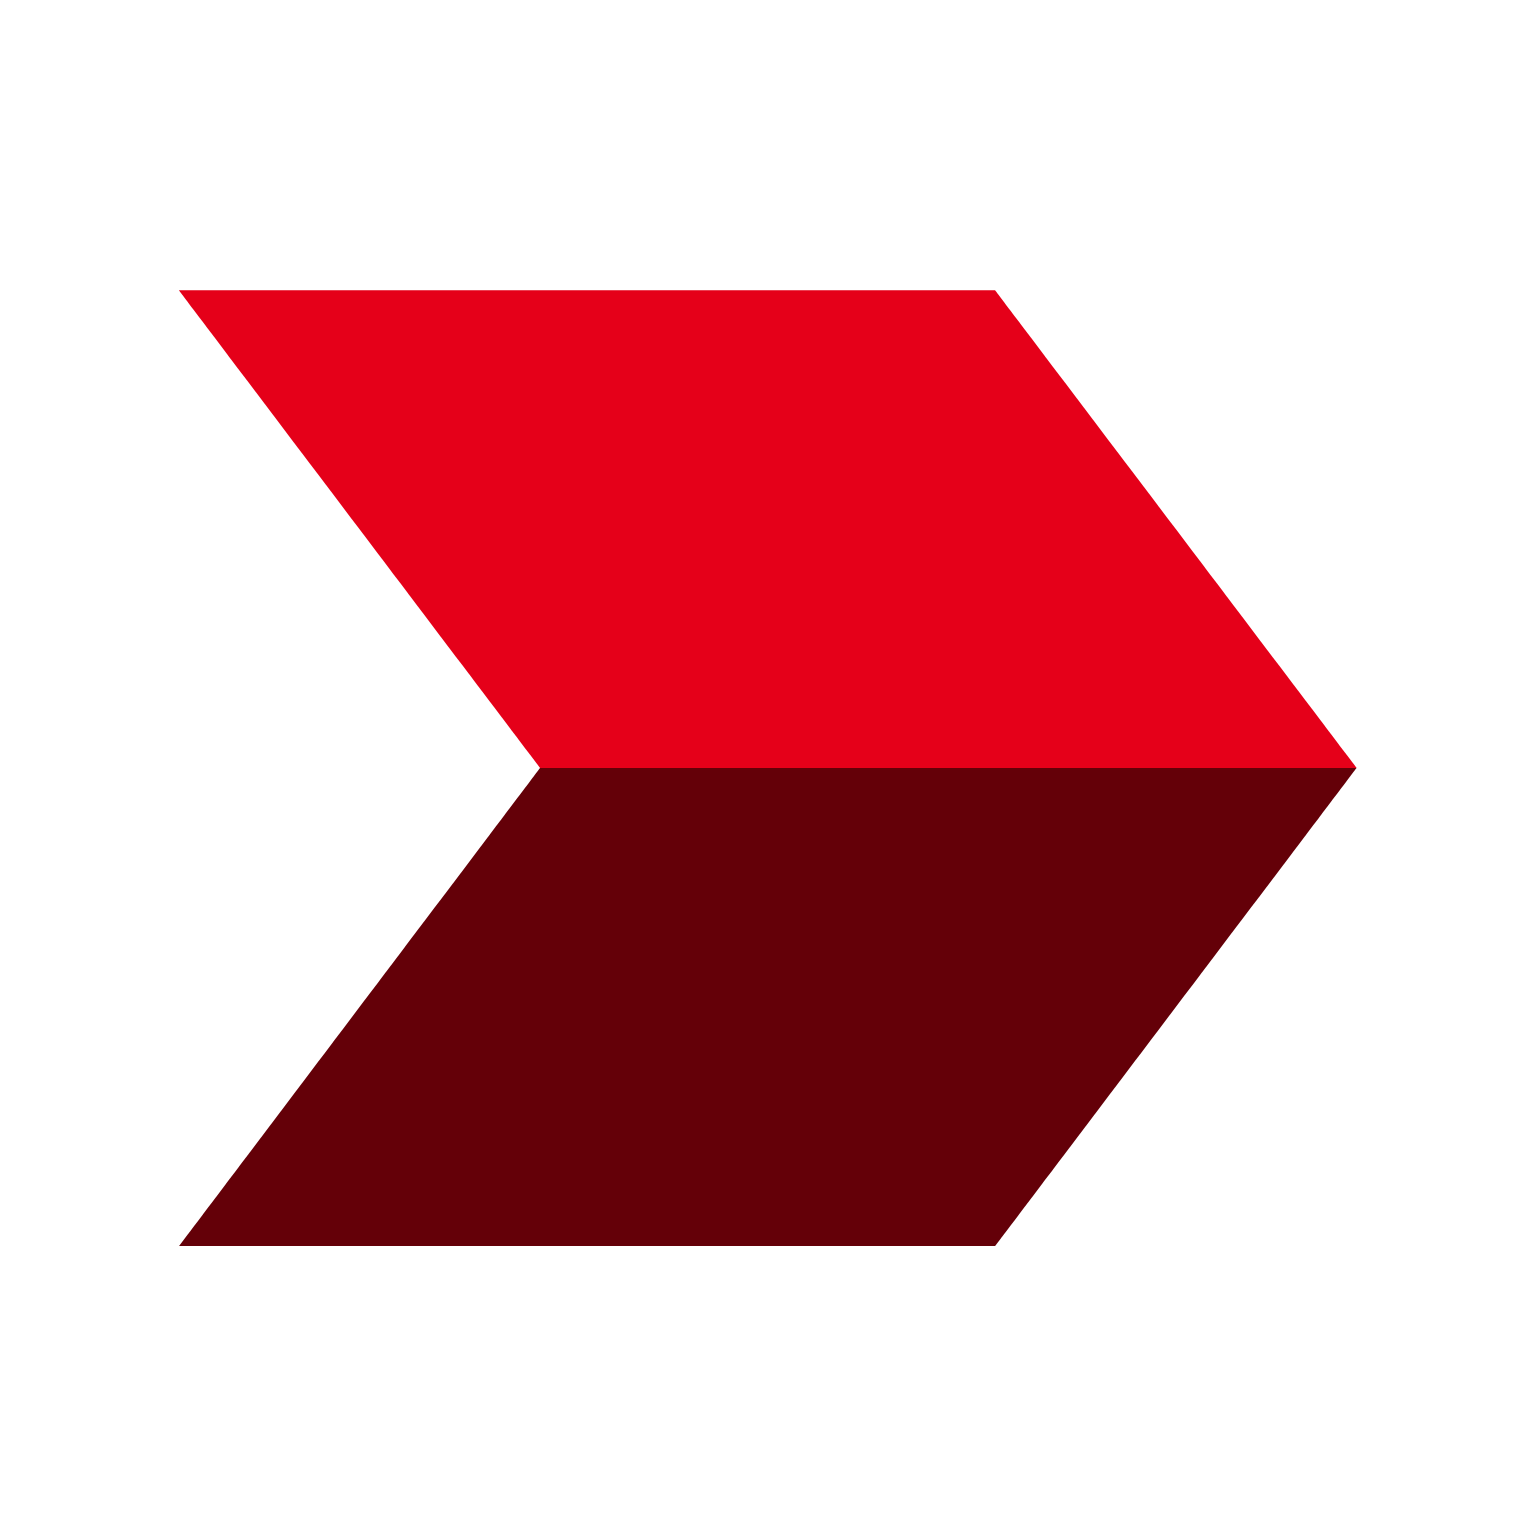 CIMB Group logo pour fonds sombres (PNG transparent)